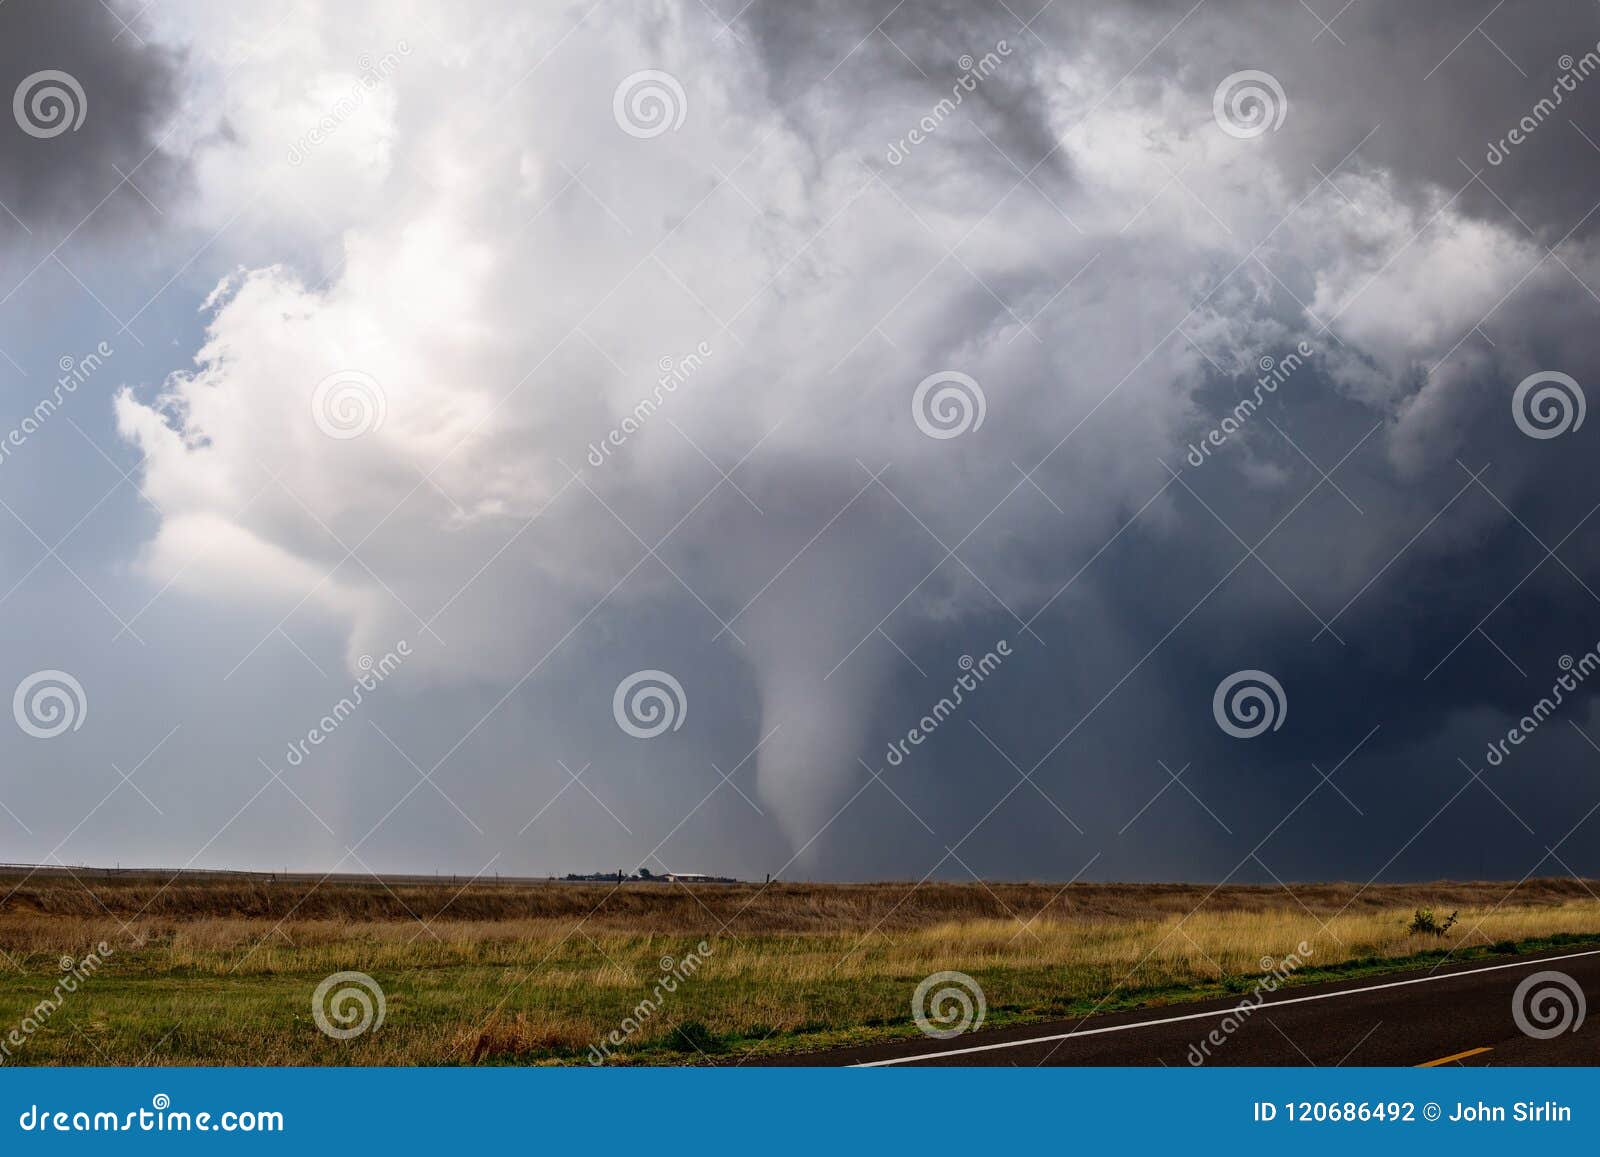 tornado spins across a field near ensign, kansas.